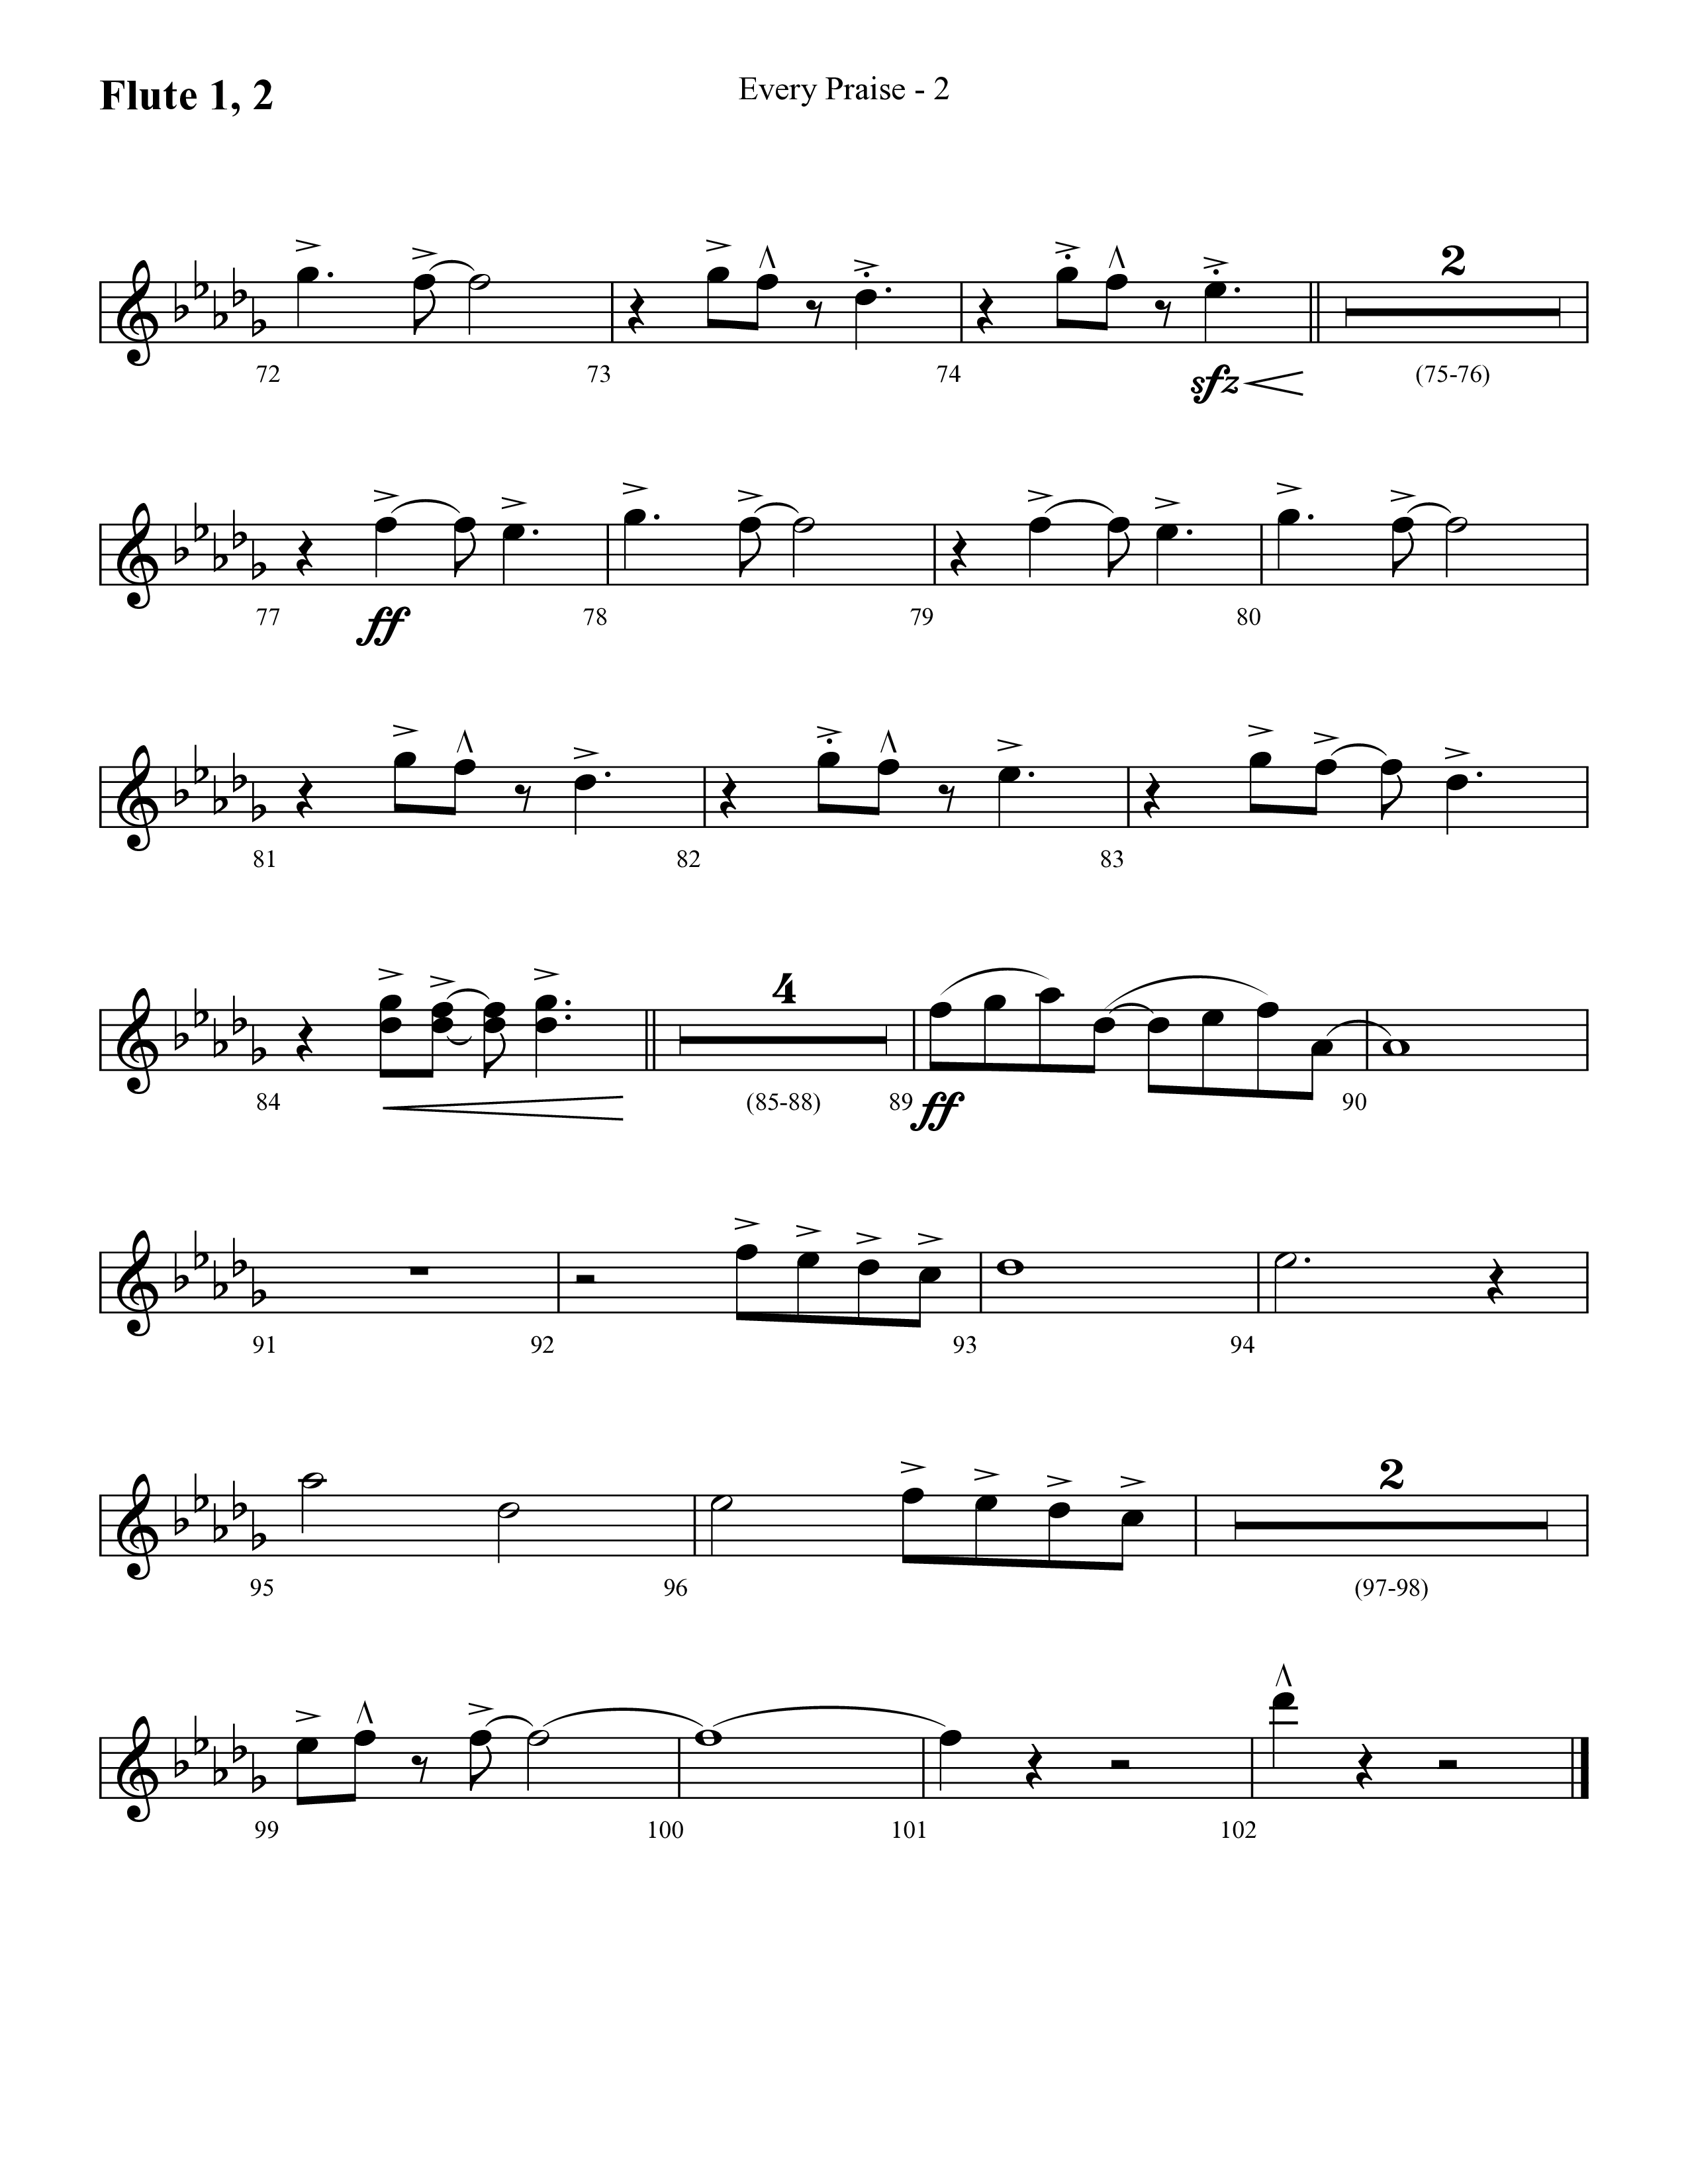 Every Praise (Choral Anthem SATB) Flute 1/2 (Lifeway Choral / Arr. Cliff Duren)